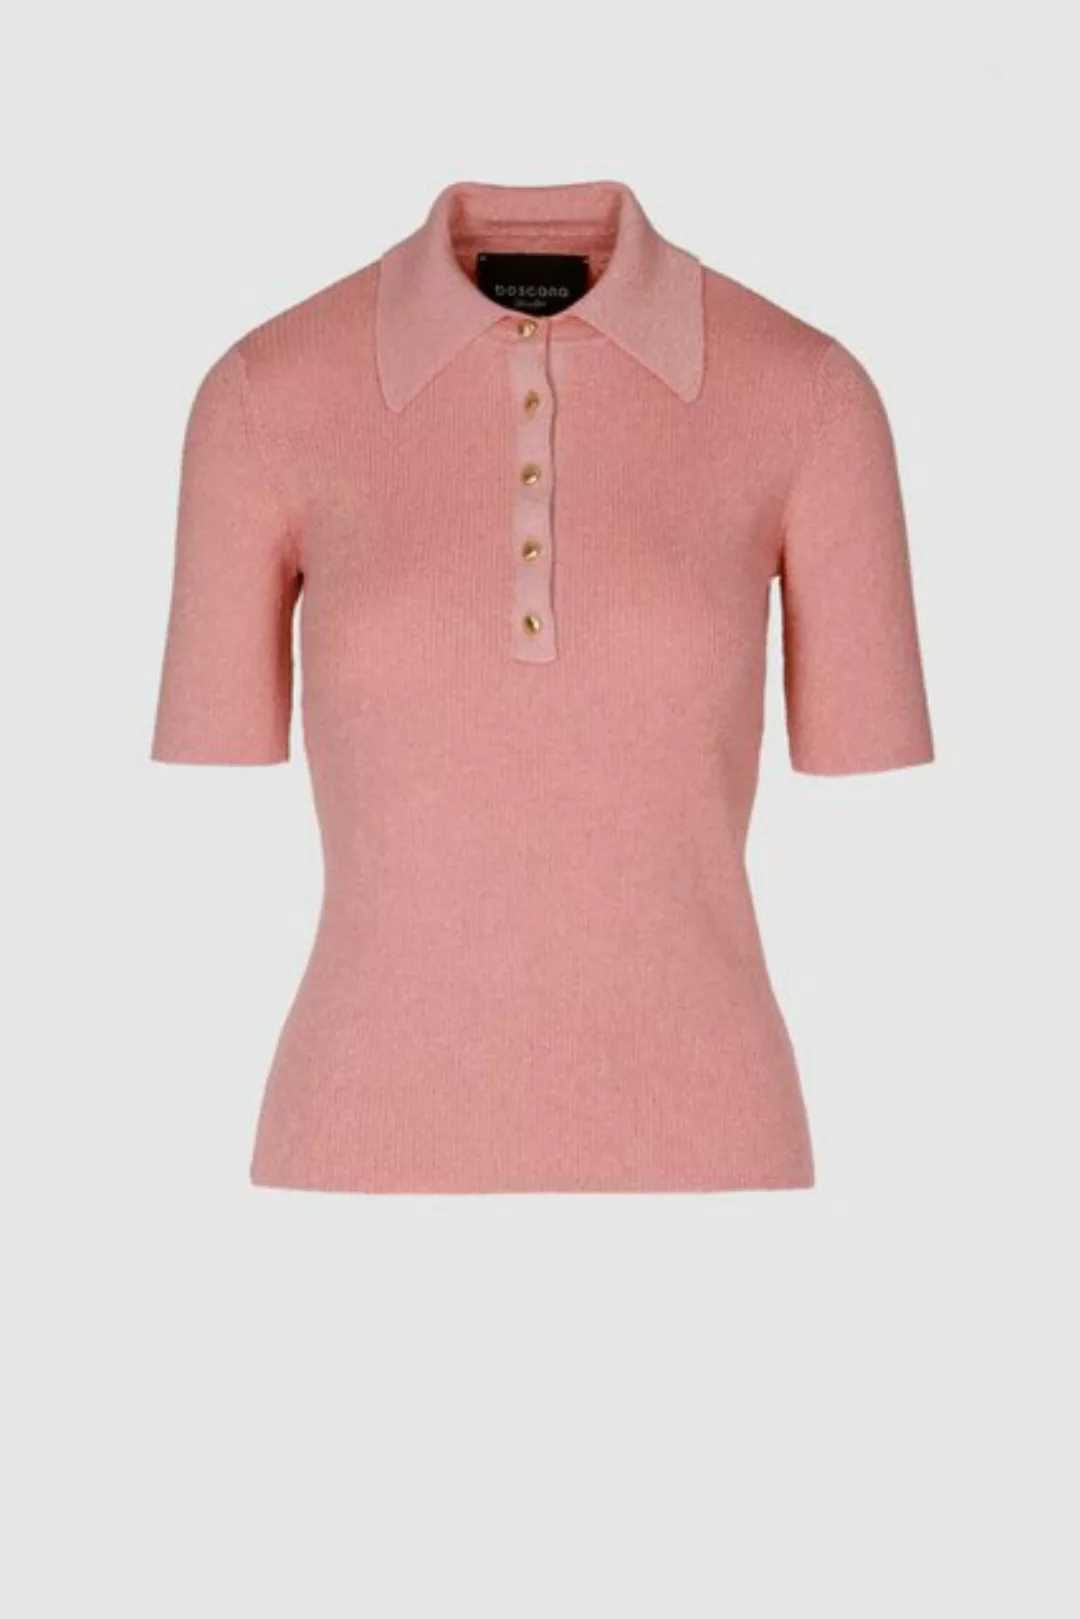 Boscana Polokragenpullover Polo Shirt in Rosa mit Lurex gestrickt günstig online kaufen